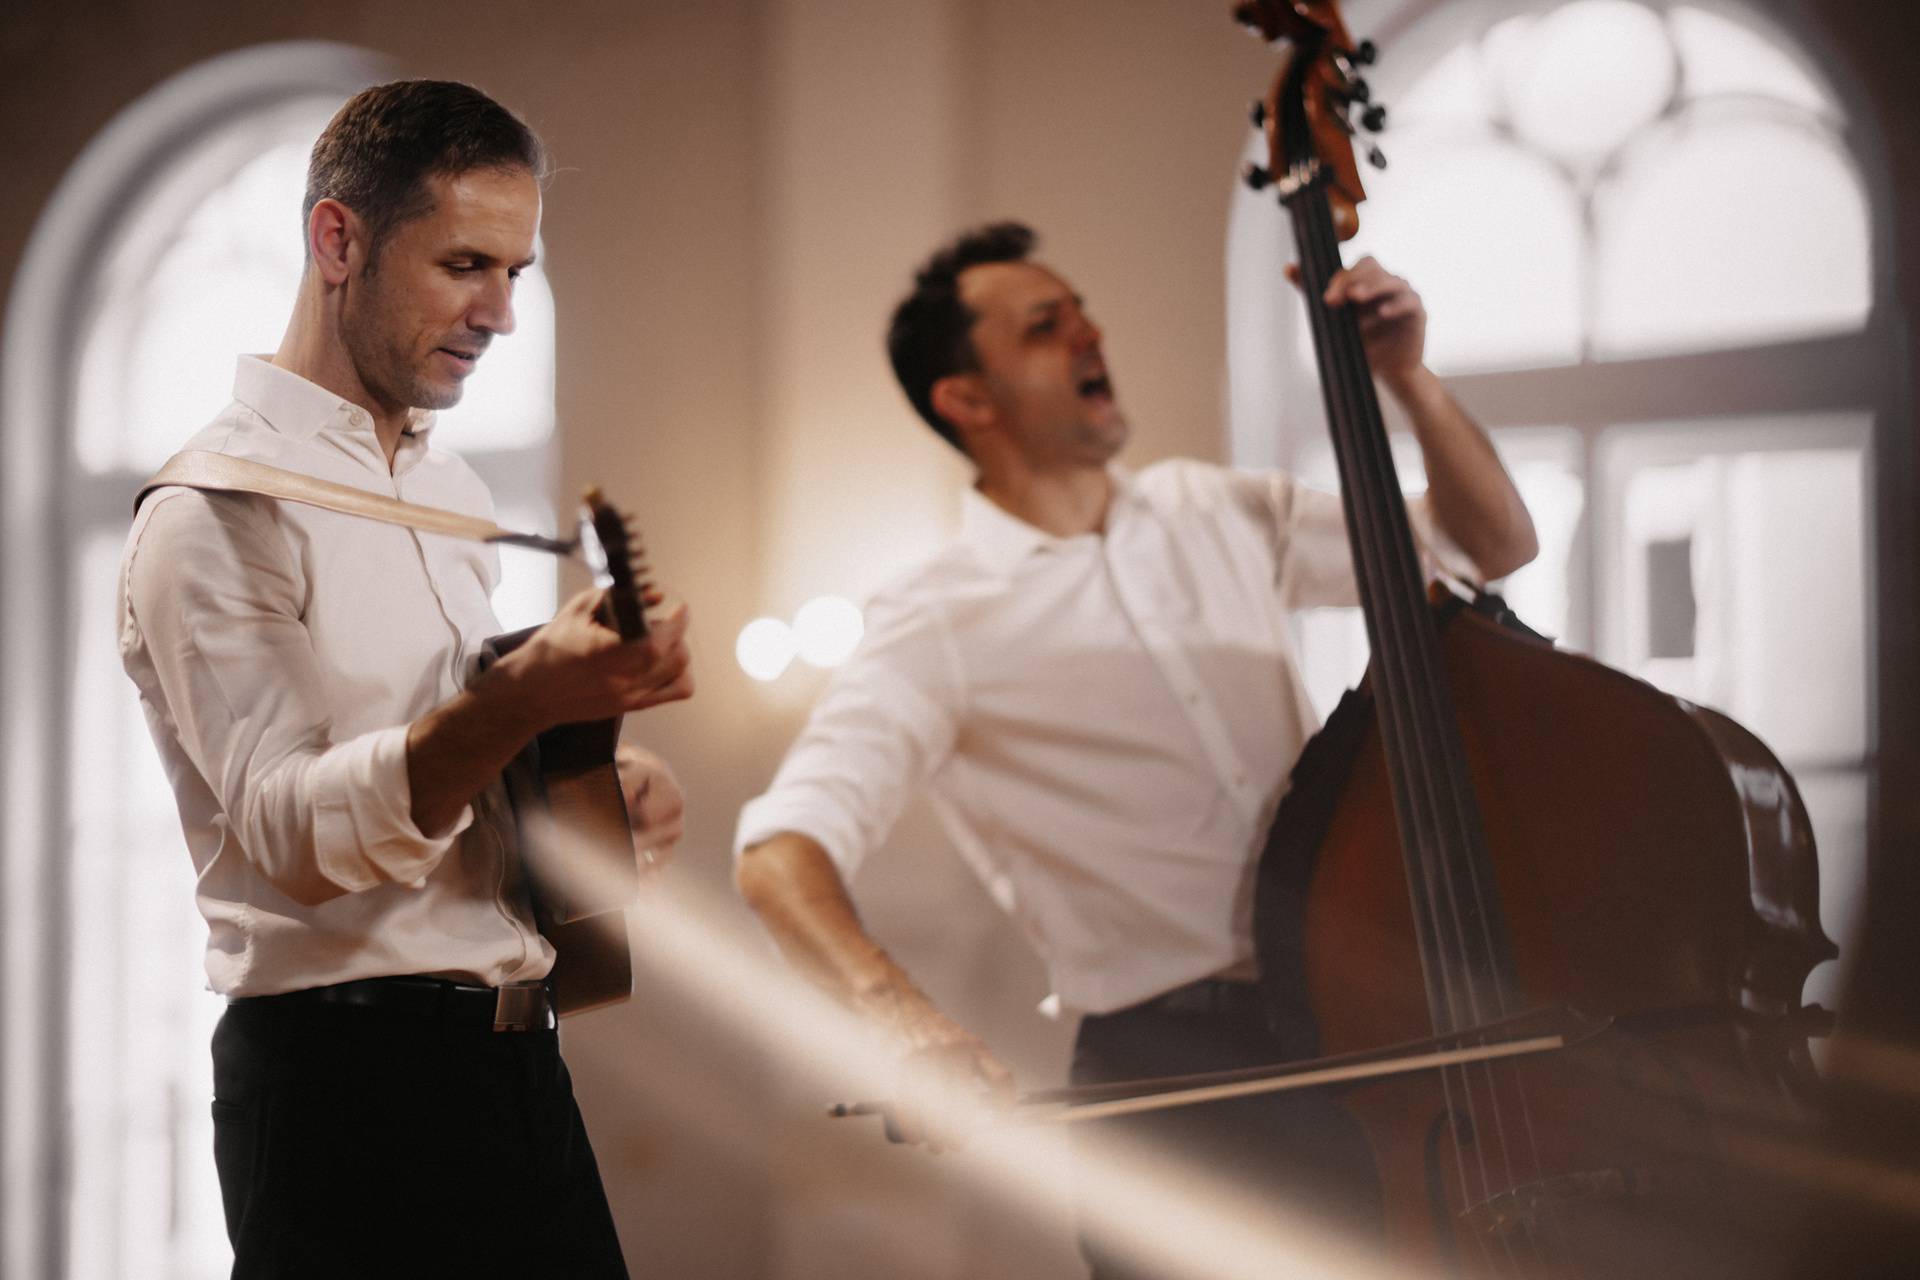 Glazbeni duo Hojsak & Novosel predstavio je svoj novi album inspiriran tradicijskom glazbom